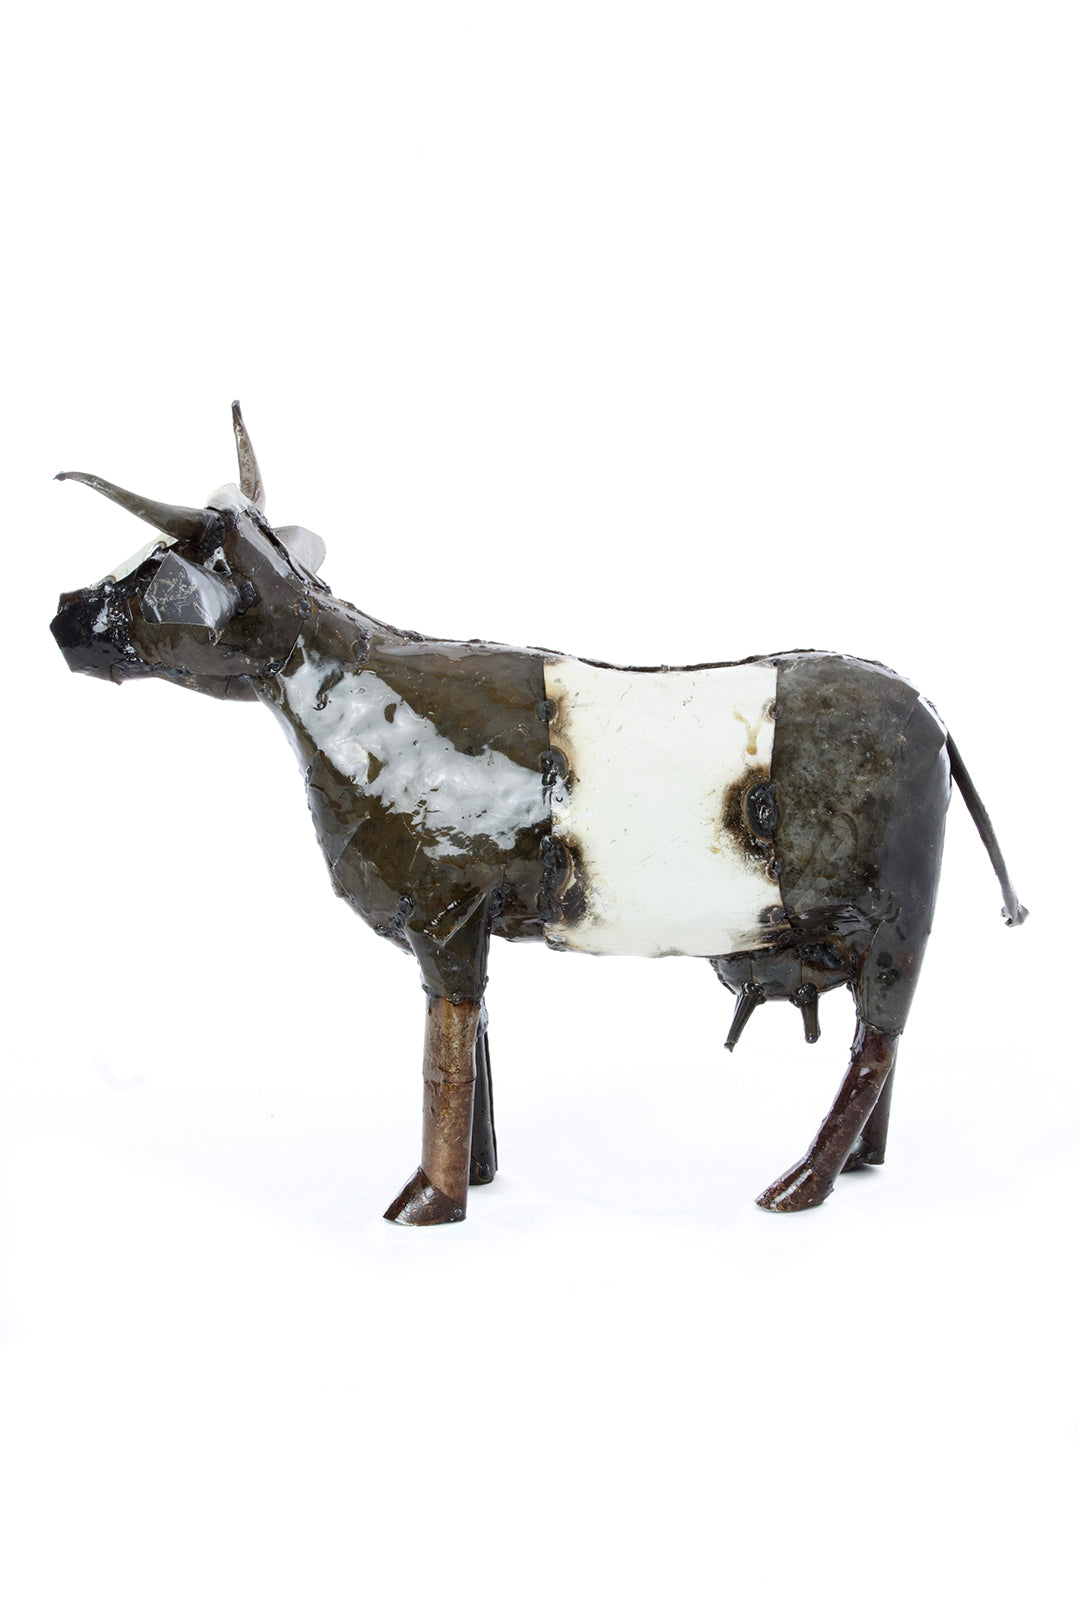 Recycled Oil Drum Milk Cow Sculptures Medium Oil Drum Cow Sculpture